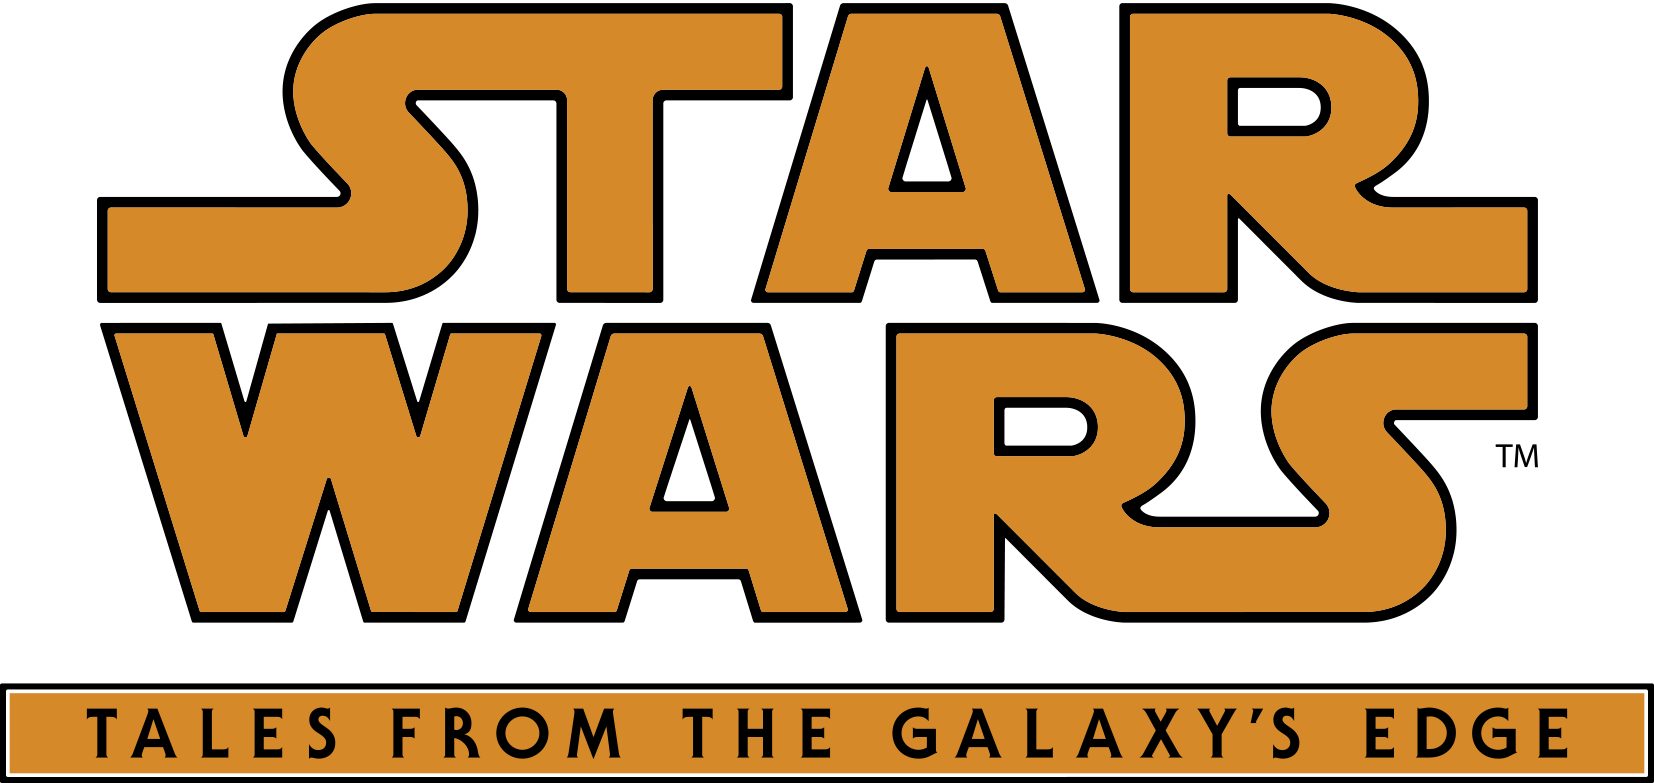 Star wars tales from the galaxy. Star Wars: Tales from the Galaxy's Edge. Star Wars Tales of the Galaxy Edge. Star Wars Tales from the Galaxy's Edge VR. Star Wars Tales from the Galaxy обложка.